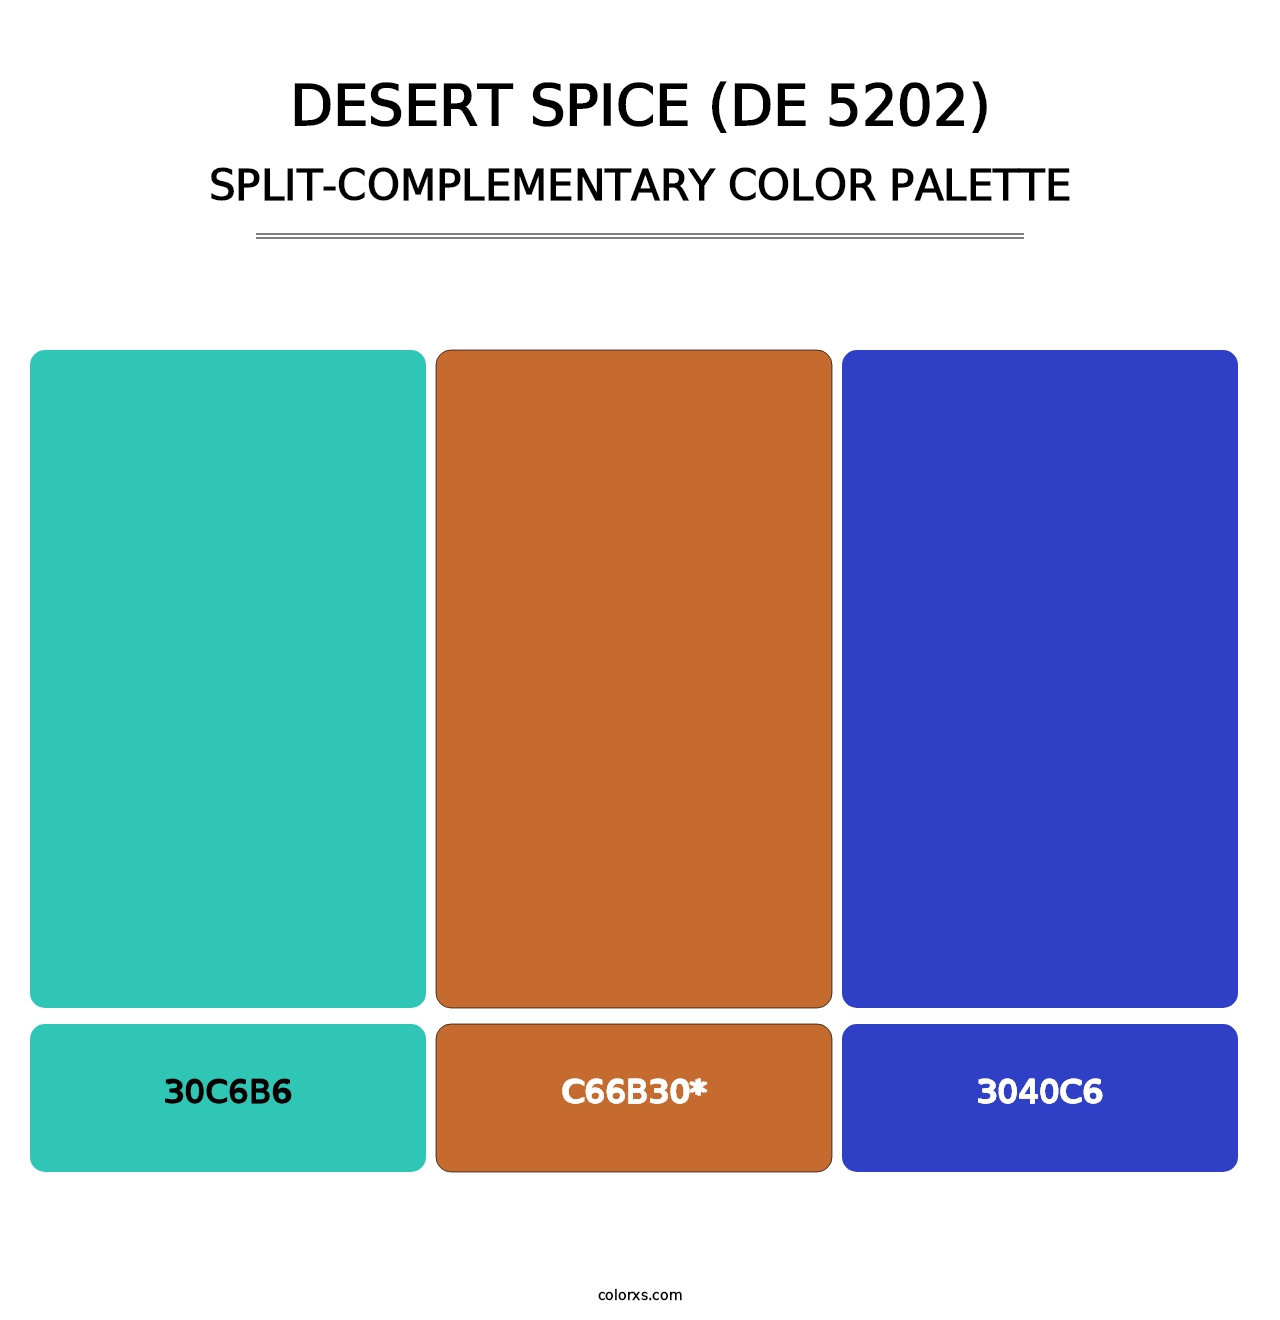 Desert Spice (DE 5202) - Split-Complementary Color Palette